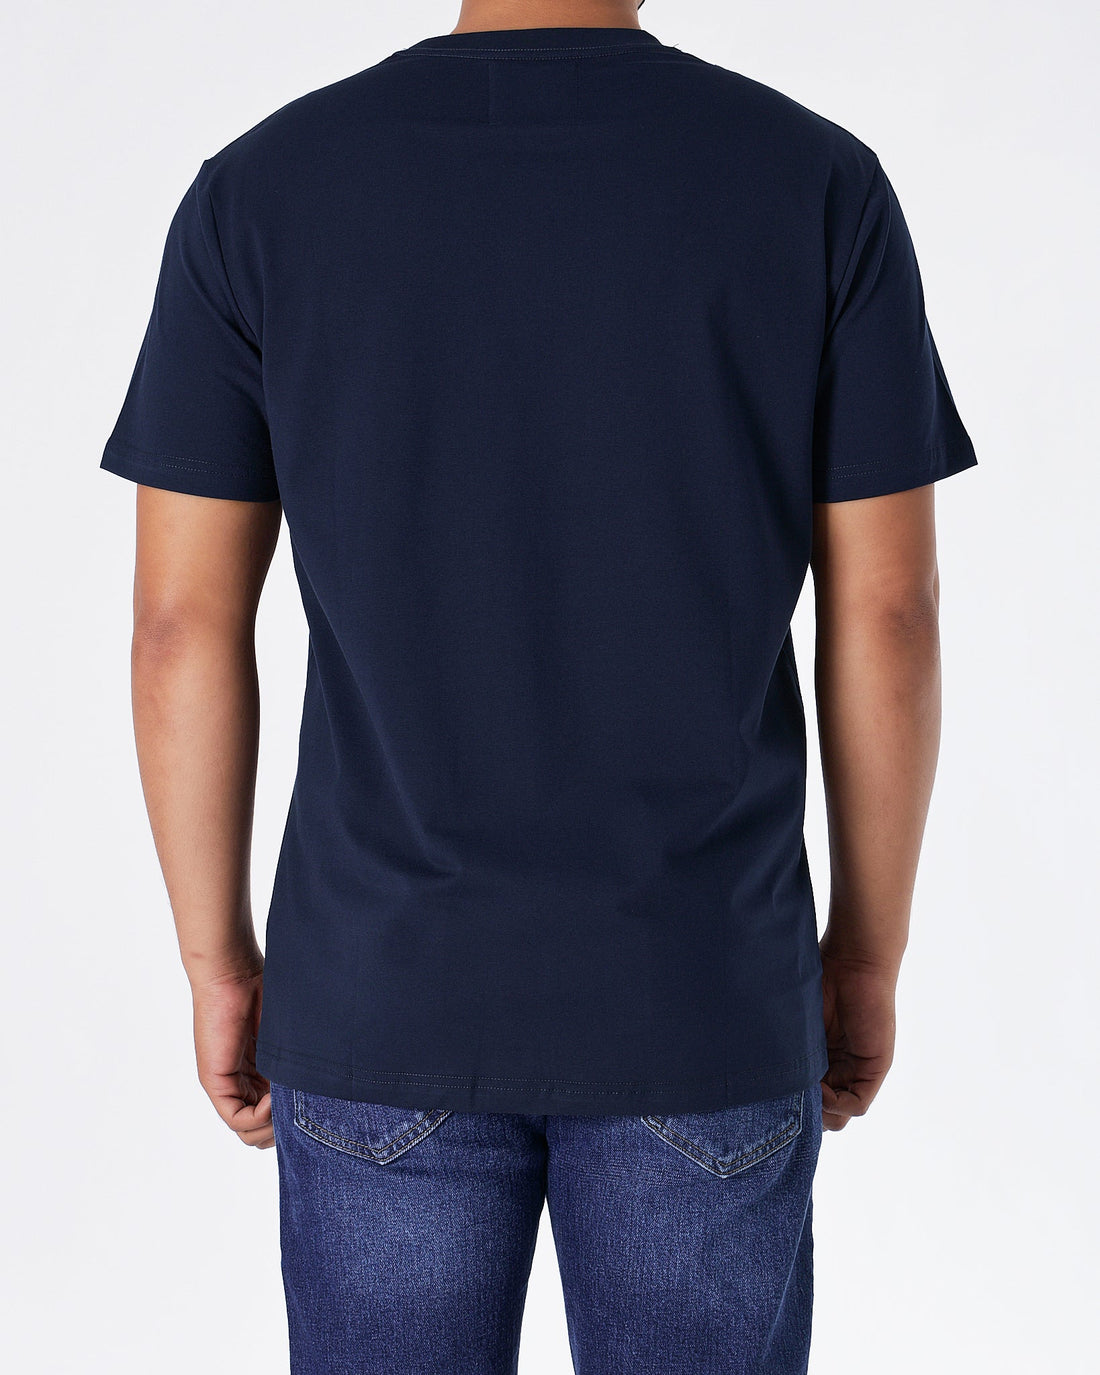 MOI OUTFIT-ABA Plain Color Men Dark Blue T-Shirt 14.90